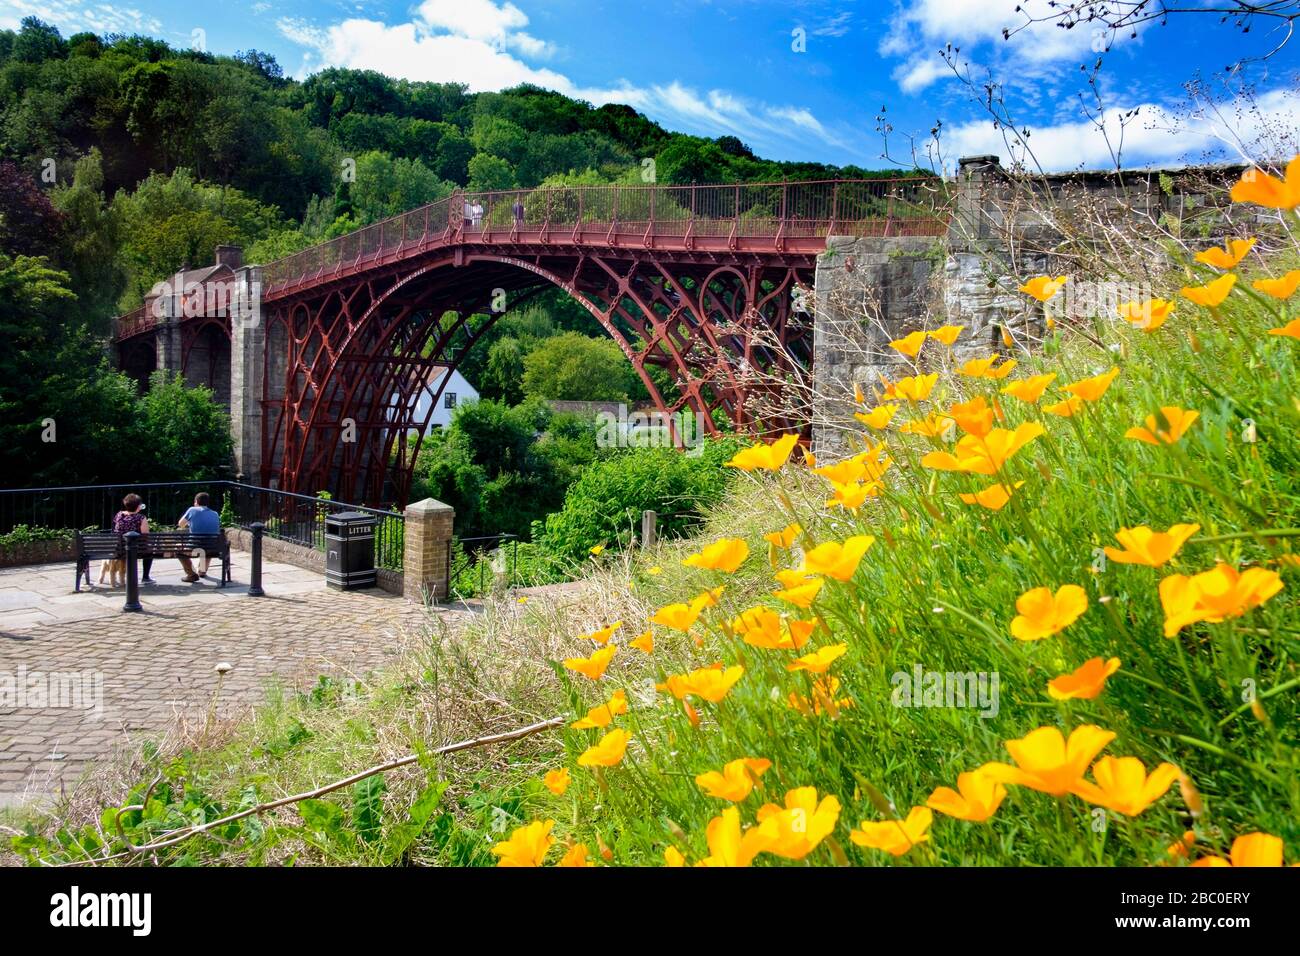 Il ponte di ferro a Ironbridge, Shropshire, Regno Unito. Costruito nel 1781, è il più antico ponte in ghisa del mondo e oggi è patrimonio dell'umanità dell'UNESCO. Foto Stock